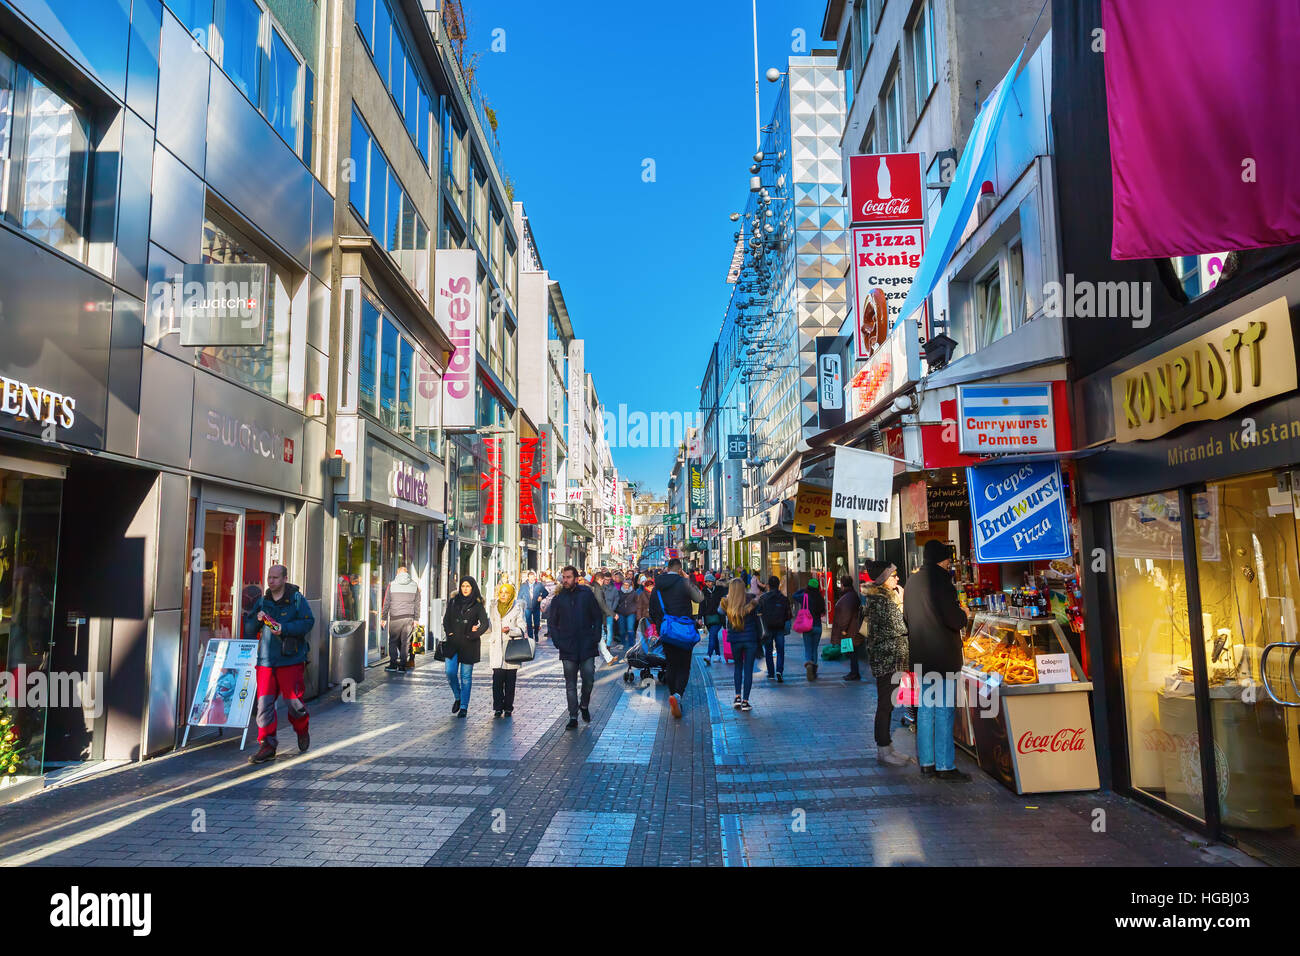 Colonia, Germania - 30 dicembre 2016: strada dello shopping Hohe Strasse con persone non identificate. Si tratta di una strada per lo shopping nella città vecchia e uno dei piazzali Foto Stock